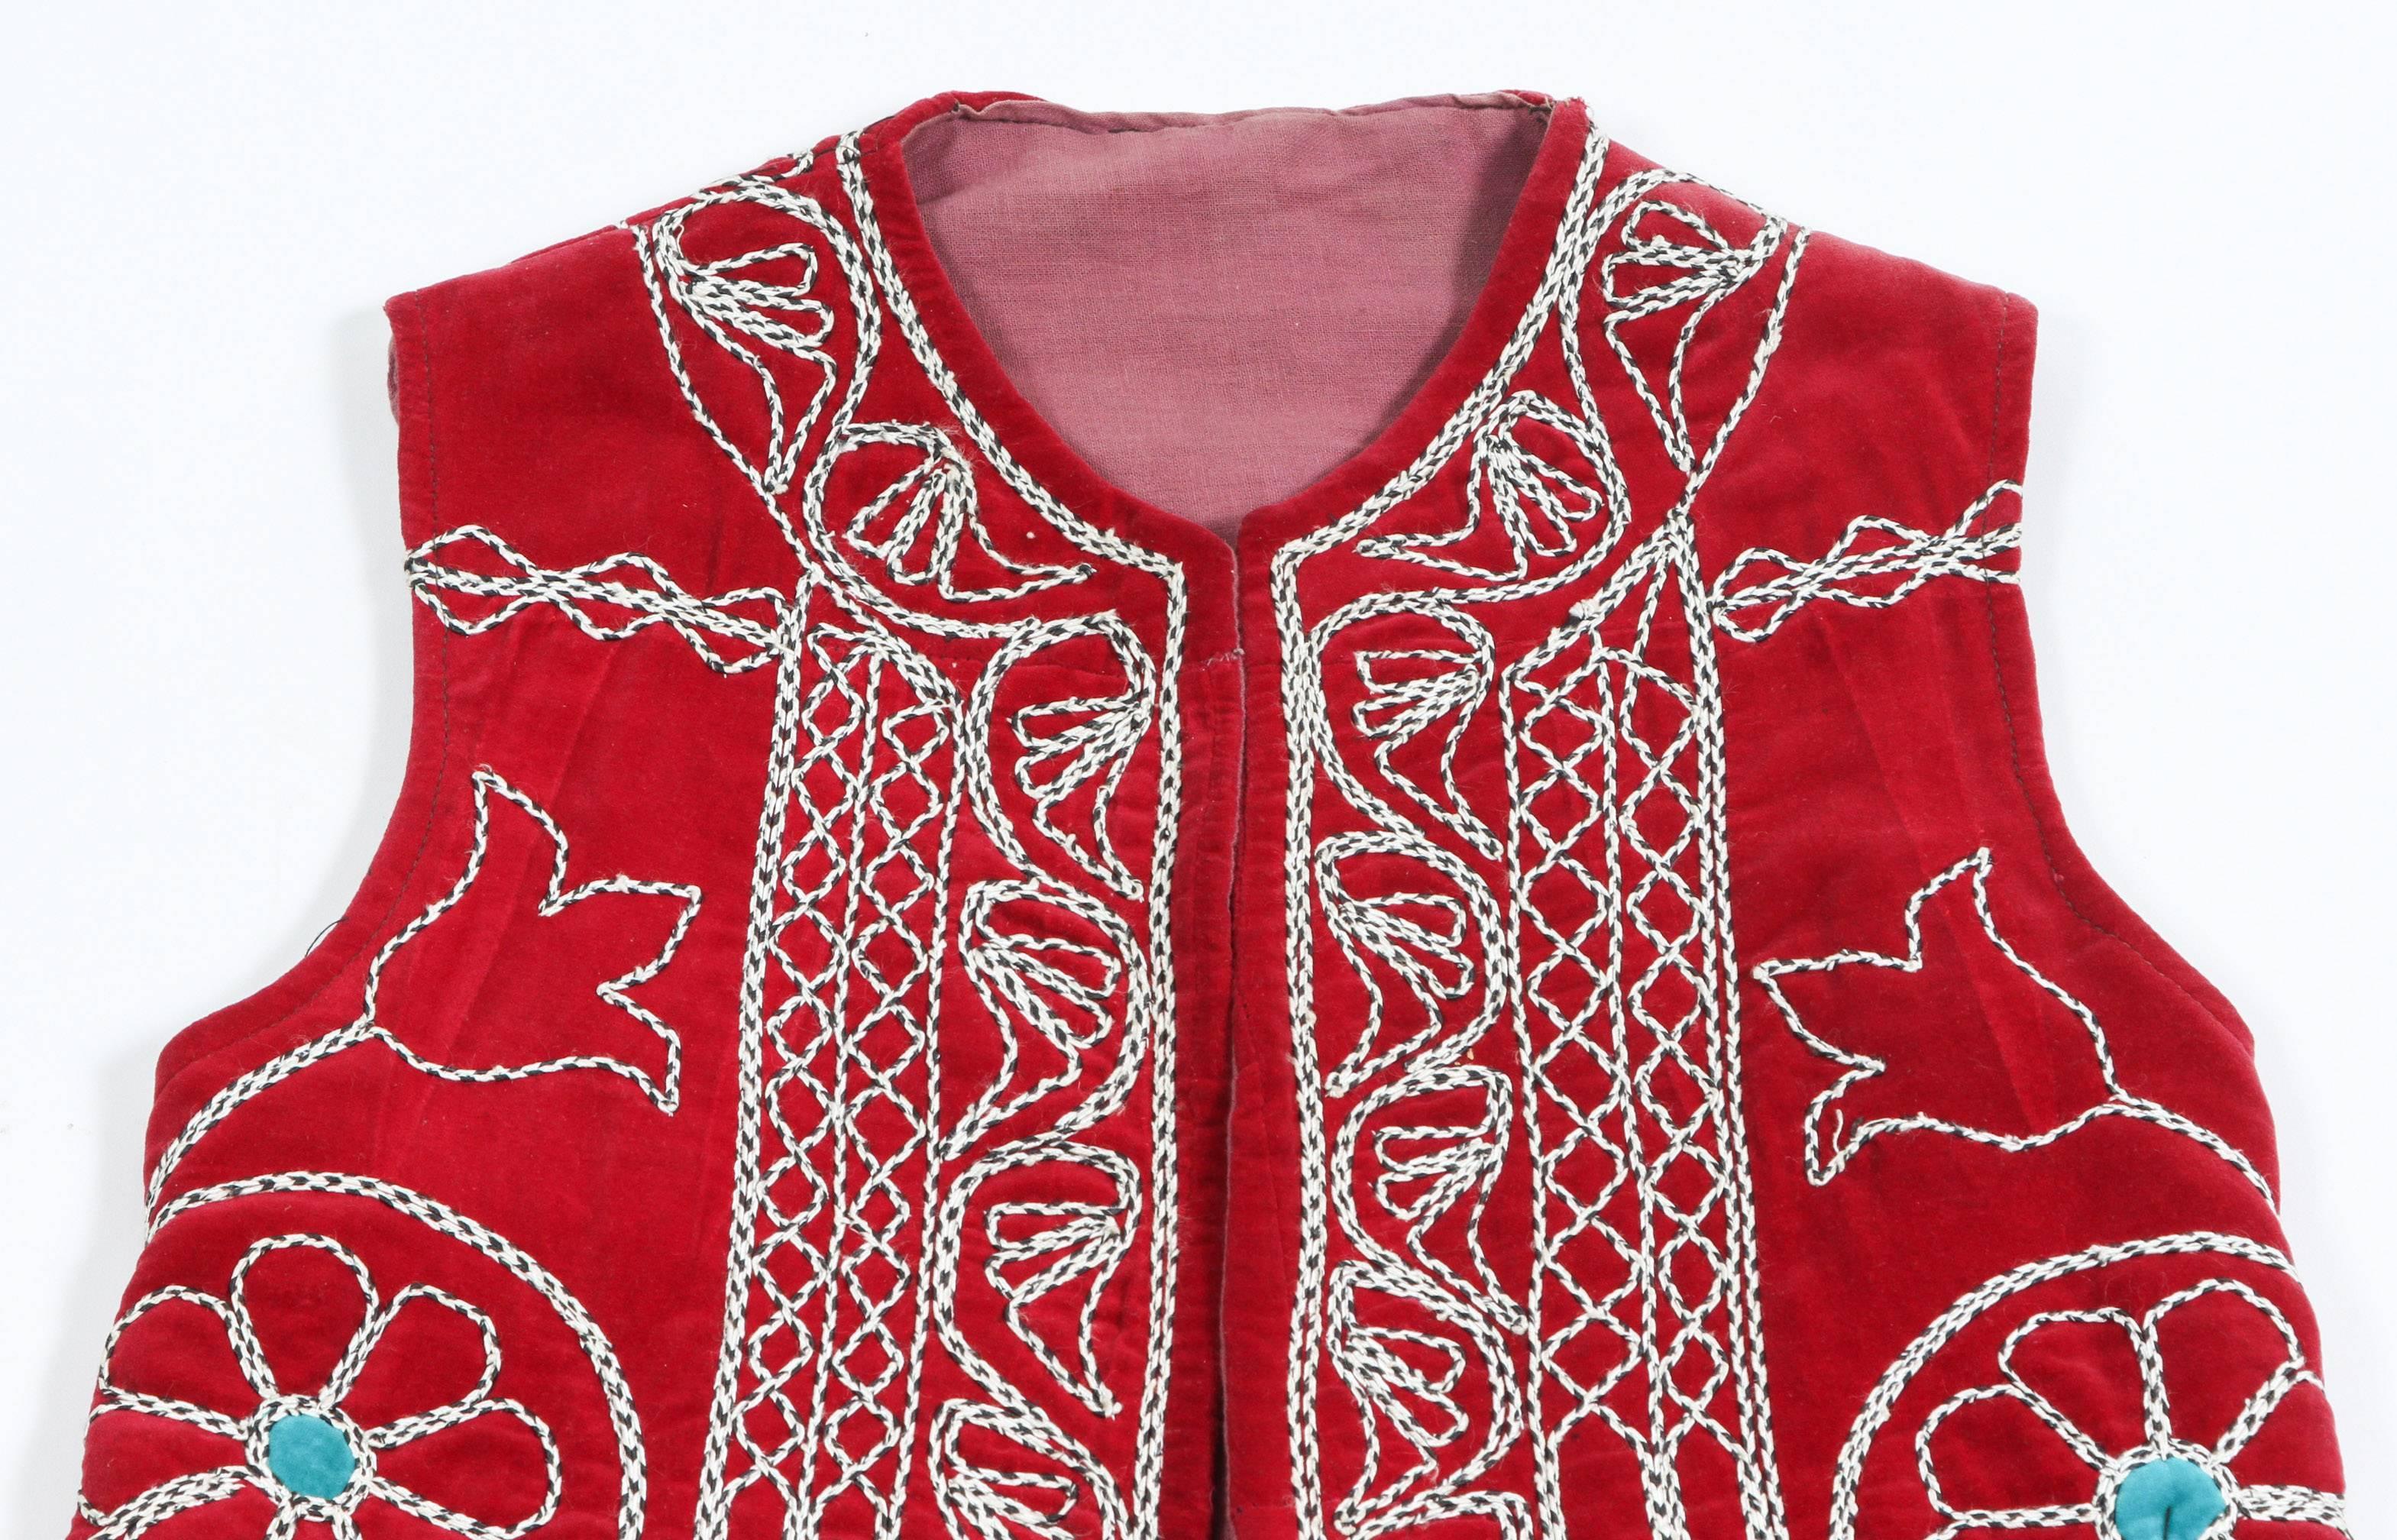 Elegant gilet long turc vintage aux couleurs vives avec des motifs géométriques sur fond rouge.
Partie du costume traditionnel de cérémonie du folklore turc.
Les motifs de la veste ouverte sont brodés de fils blancs, de fleurs et de motifs